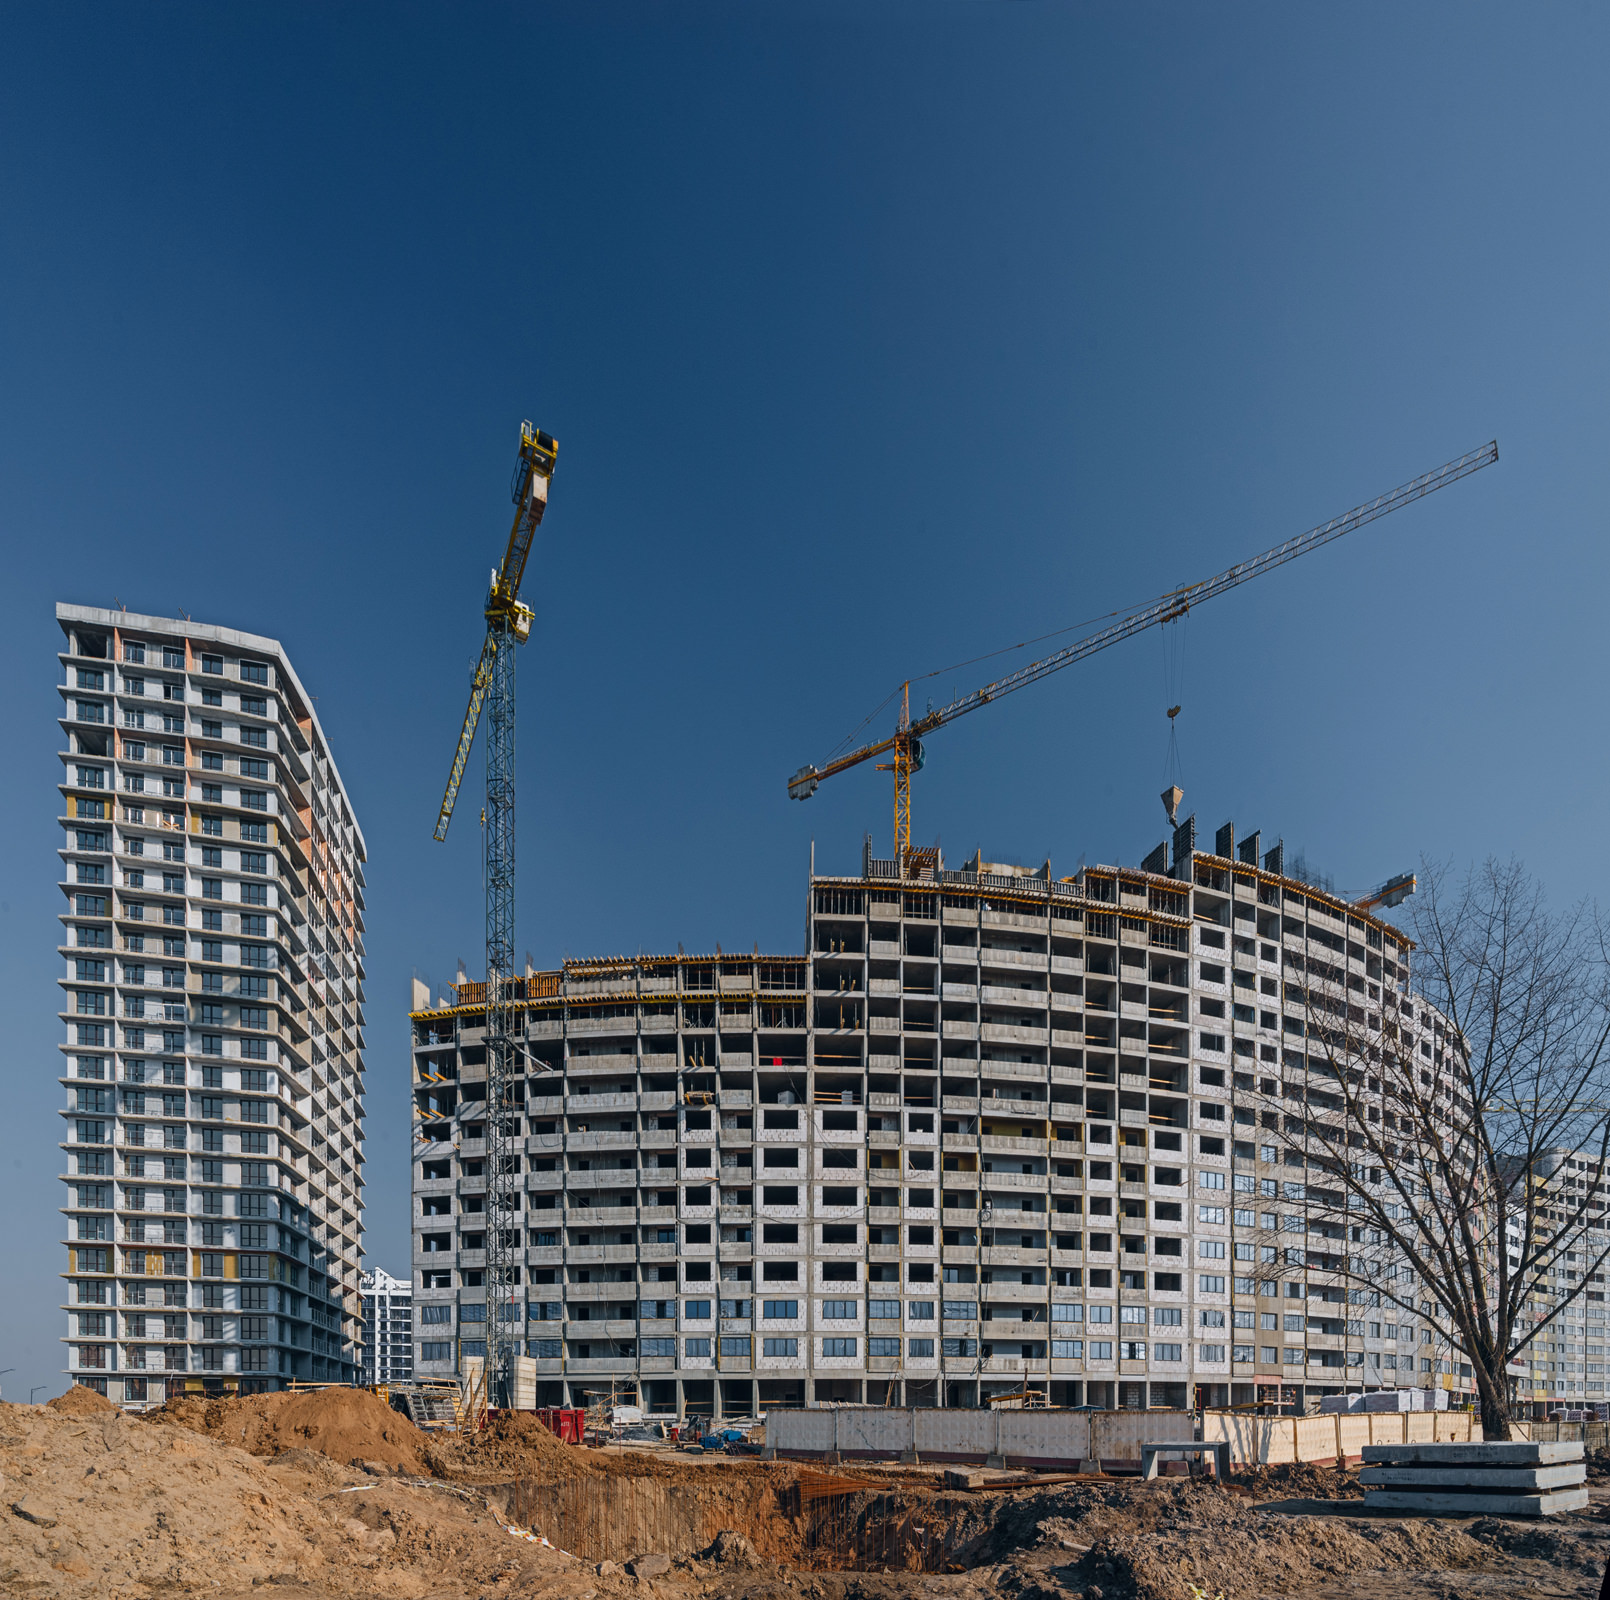 Исполнительная съемка строительного объекта по заказу производителя изоляционного материала, фото возведения многоэтажного жилого дома в комплексе Минск-Мир